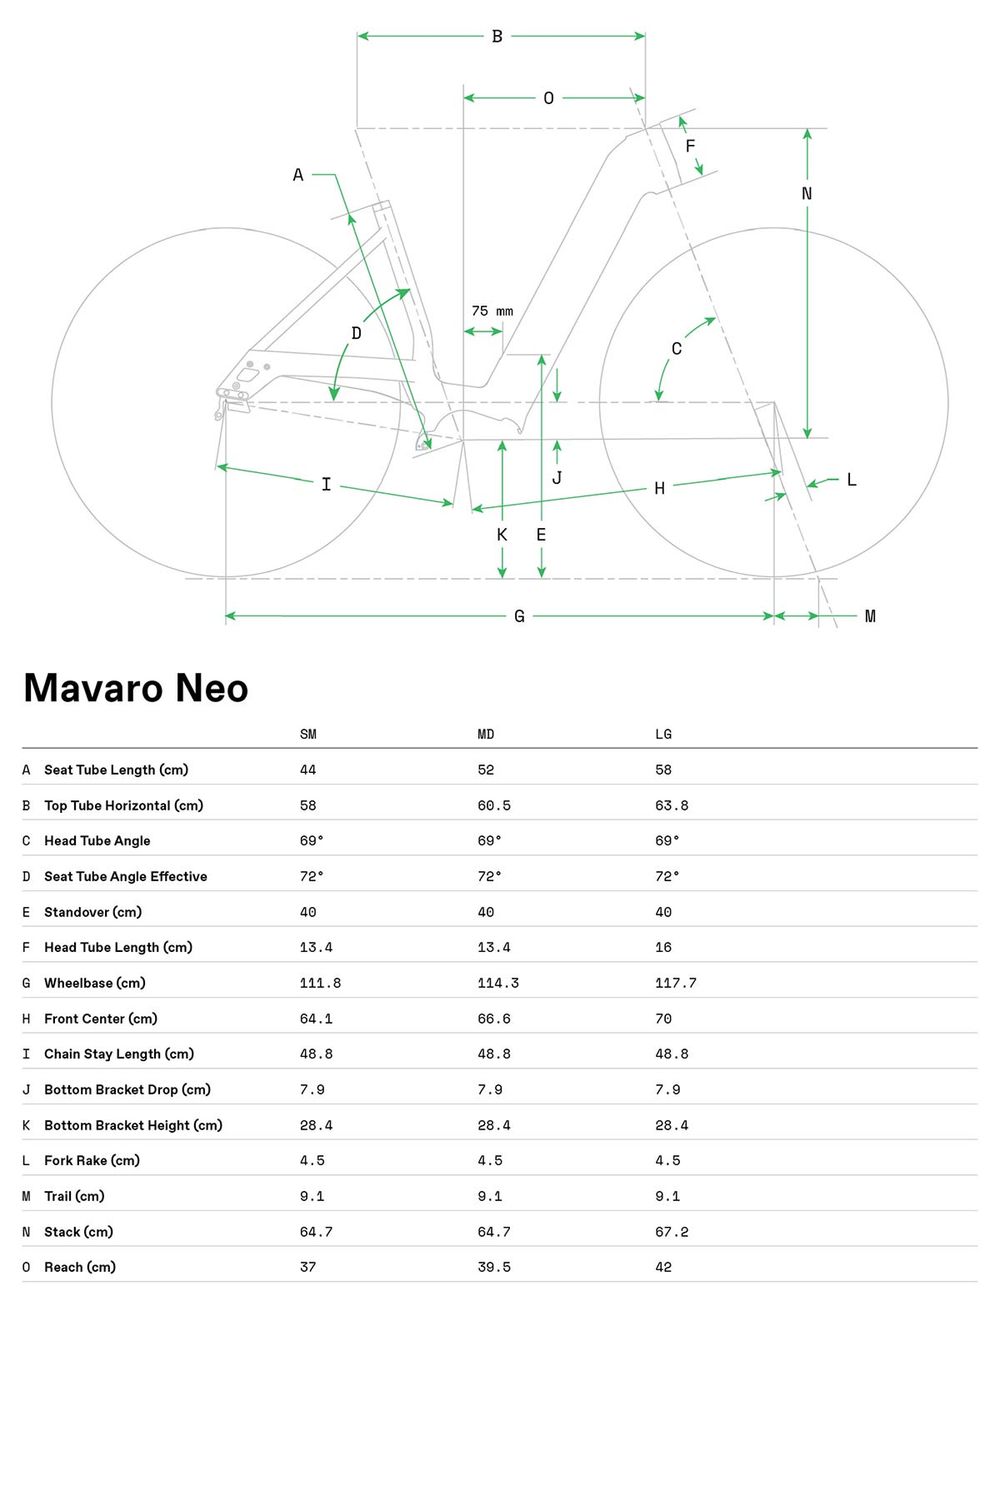 Mavaro Neo 1 - 